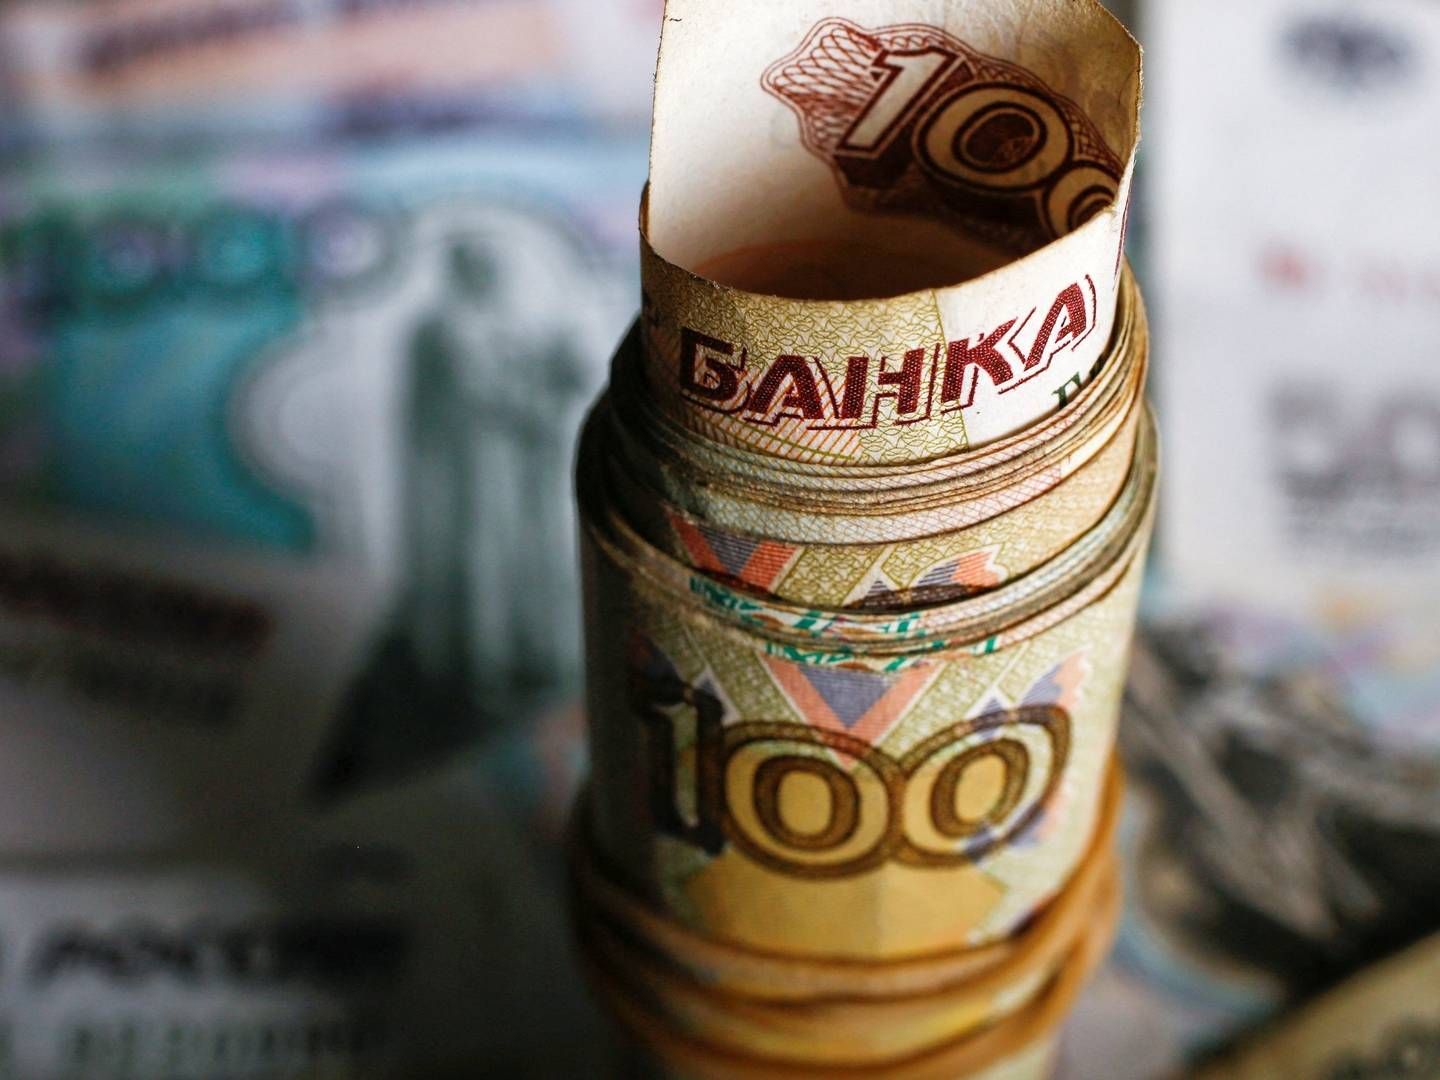 Flere pensionsselskaber er i gang med at sælge ud af deres beholdning af russiske statsobligationer. | Foto: KACPER PEMPEL/REUTERS / X02307